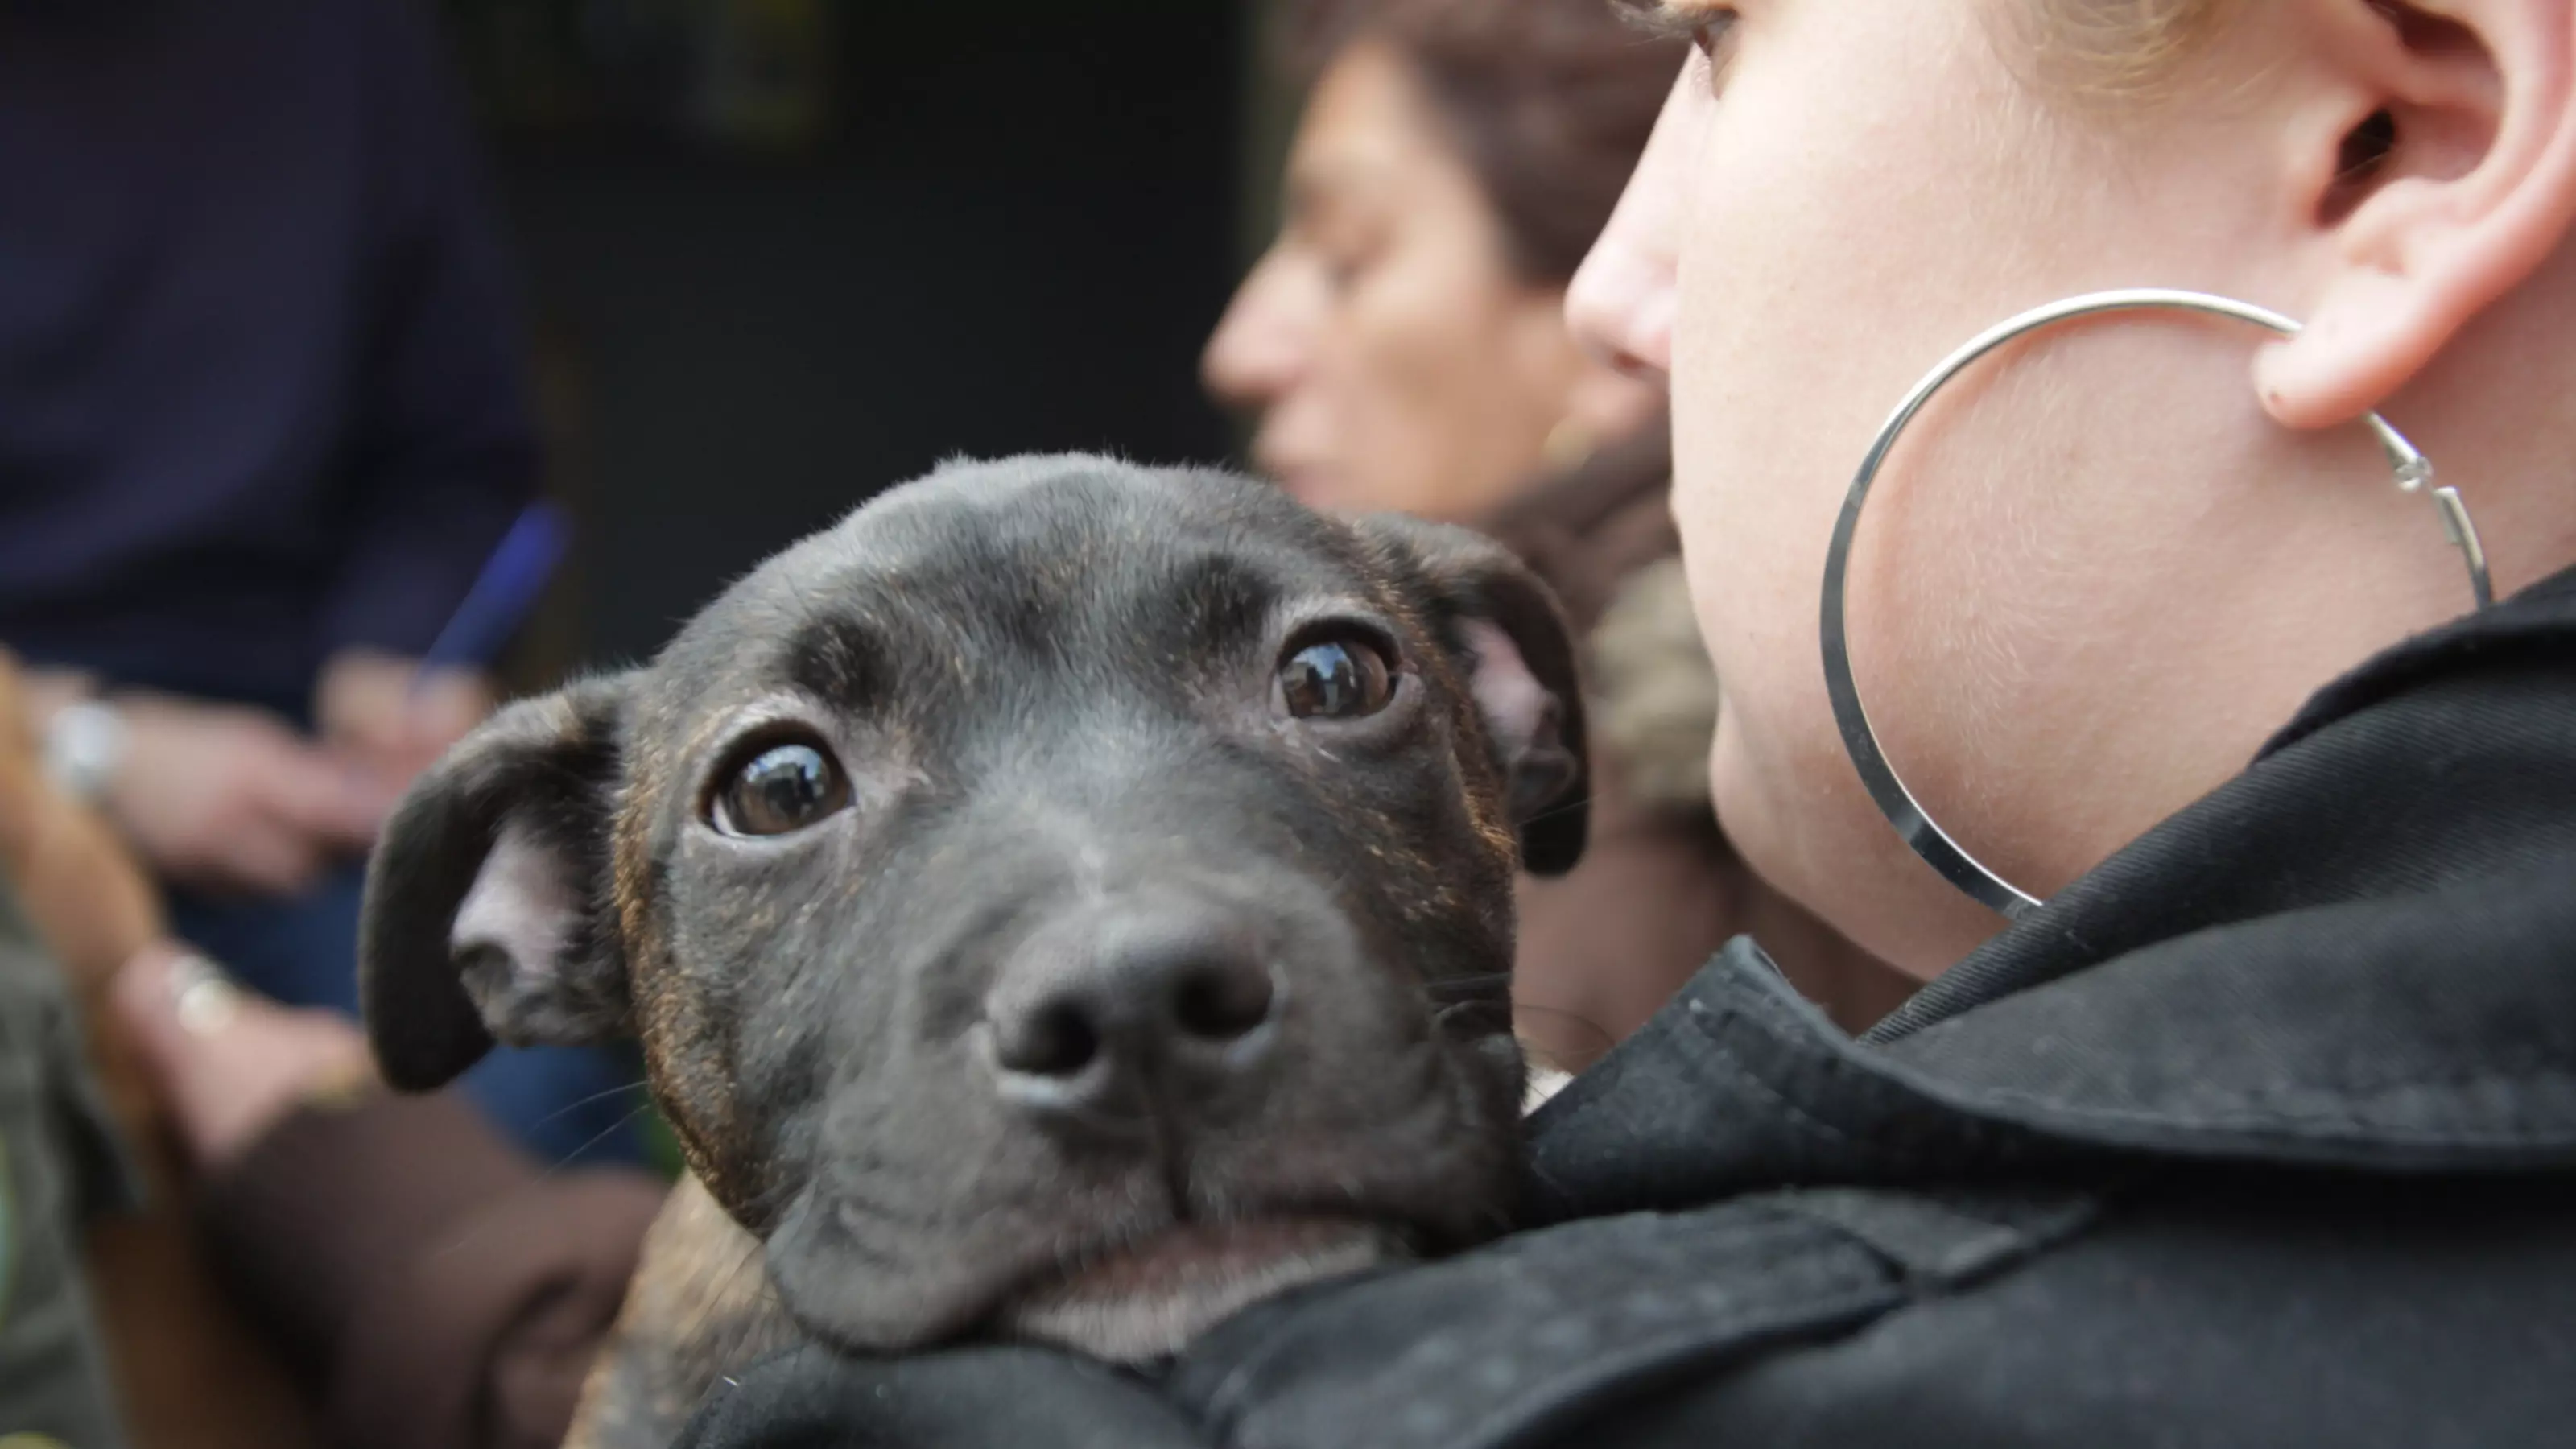 Koula Shannon's 13-week-old Staffordshire Bull Terrier puppy Missy Elliot